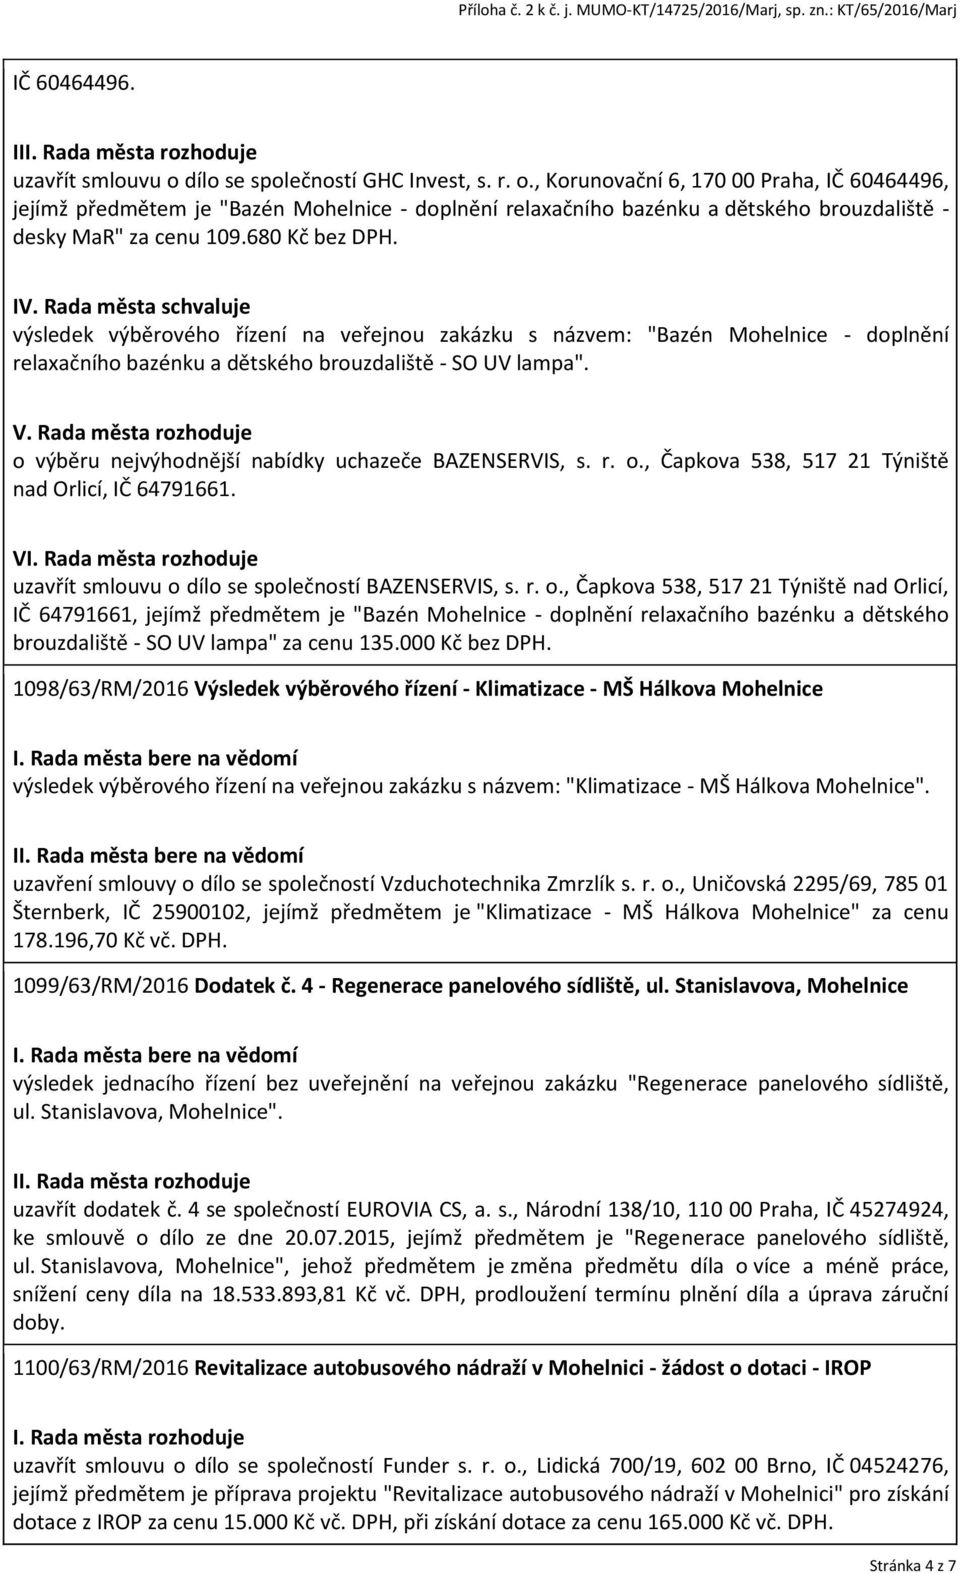 Rada města rozhoduje o výběru nejvýhodnější nabídky uchazeče BAZENSERVIS, s. r. o., Čapkova 538, 517 21 Týniště nad Orlicí, IČ 64791661. V uzavřít smlouvu o dílo se společností BAZENSERVIS, s. r. o., Čapkova 538, 517 21 Týniště nad Orlicí, IČ 64791661, jejímž předmětem je "Bazén Mohelnice - doplnění relaxačního bazénku a dětského brouzdaliště - SO UV lampa" za cenu 135.